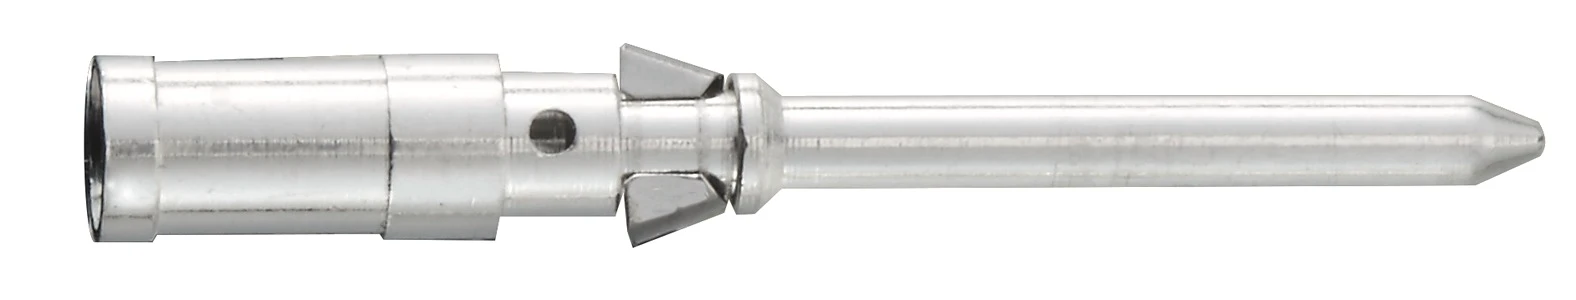 Harting Contact voor industriële connector Han D R15 stift-c 0,75 mm Ag